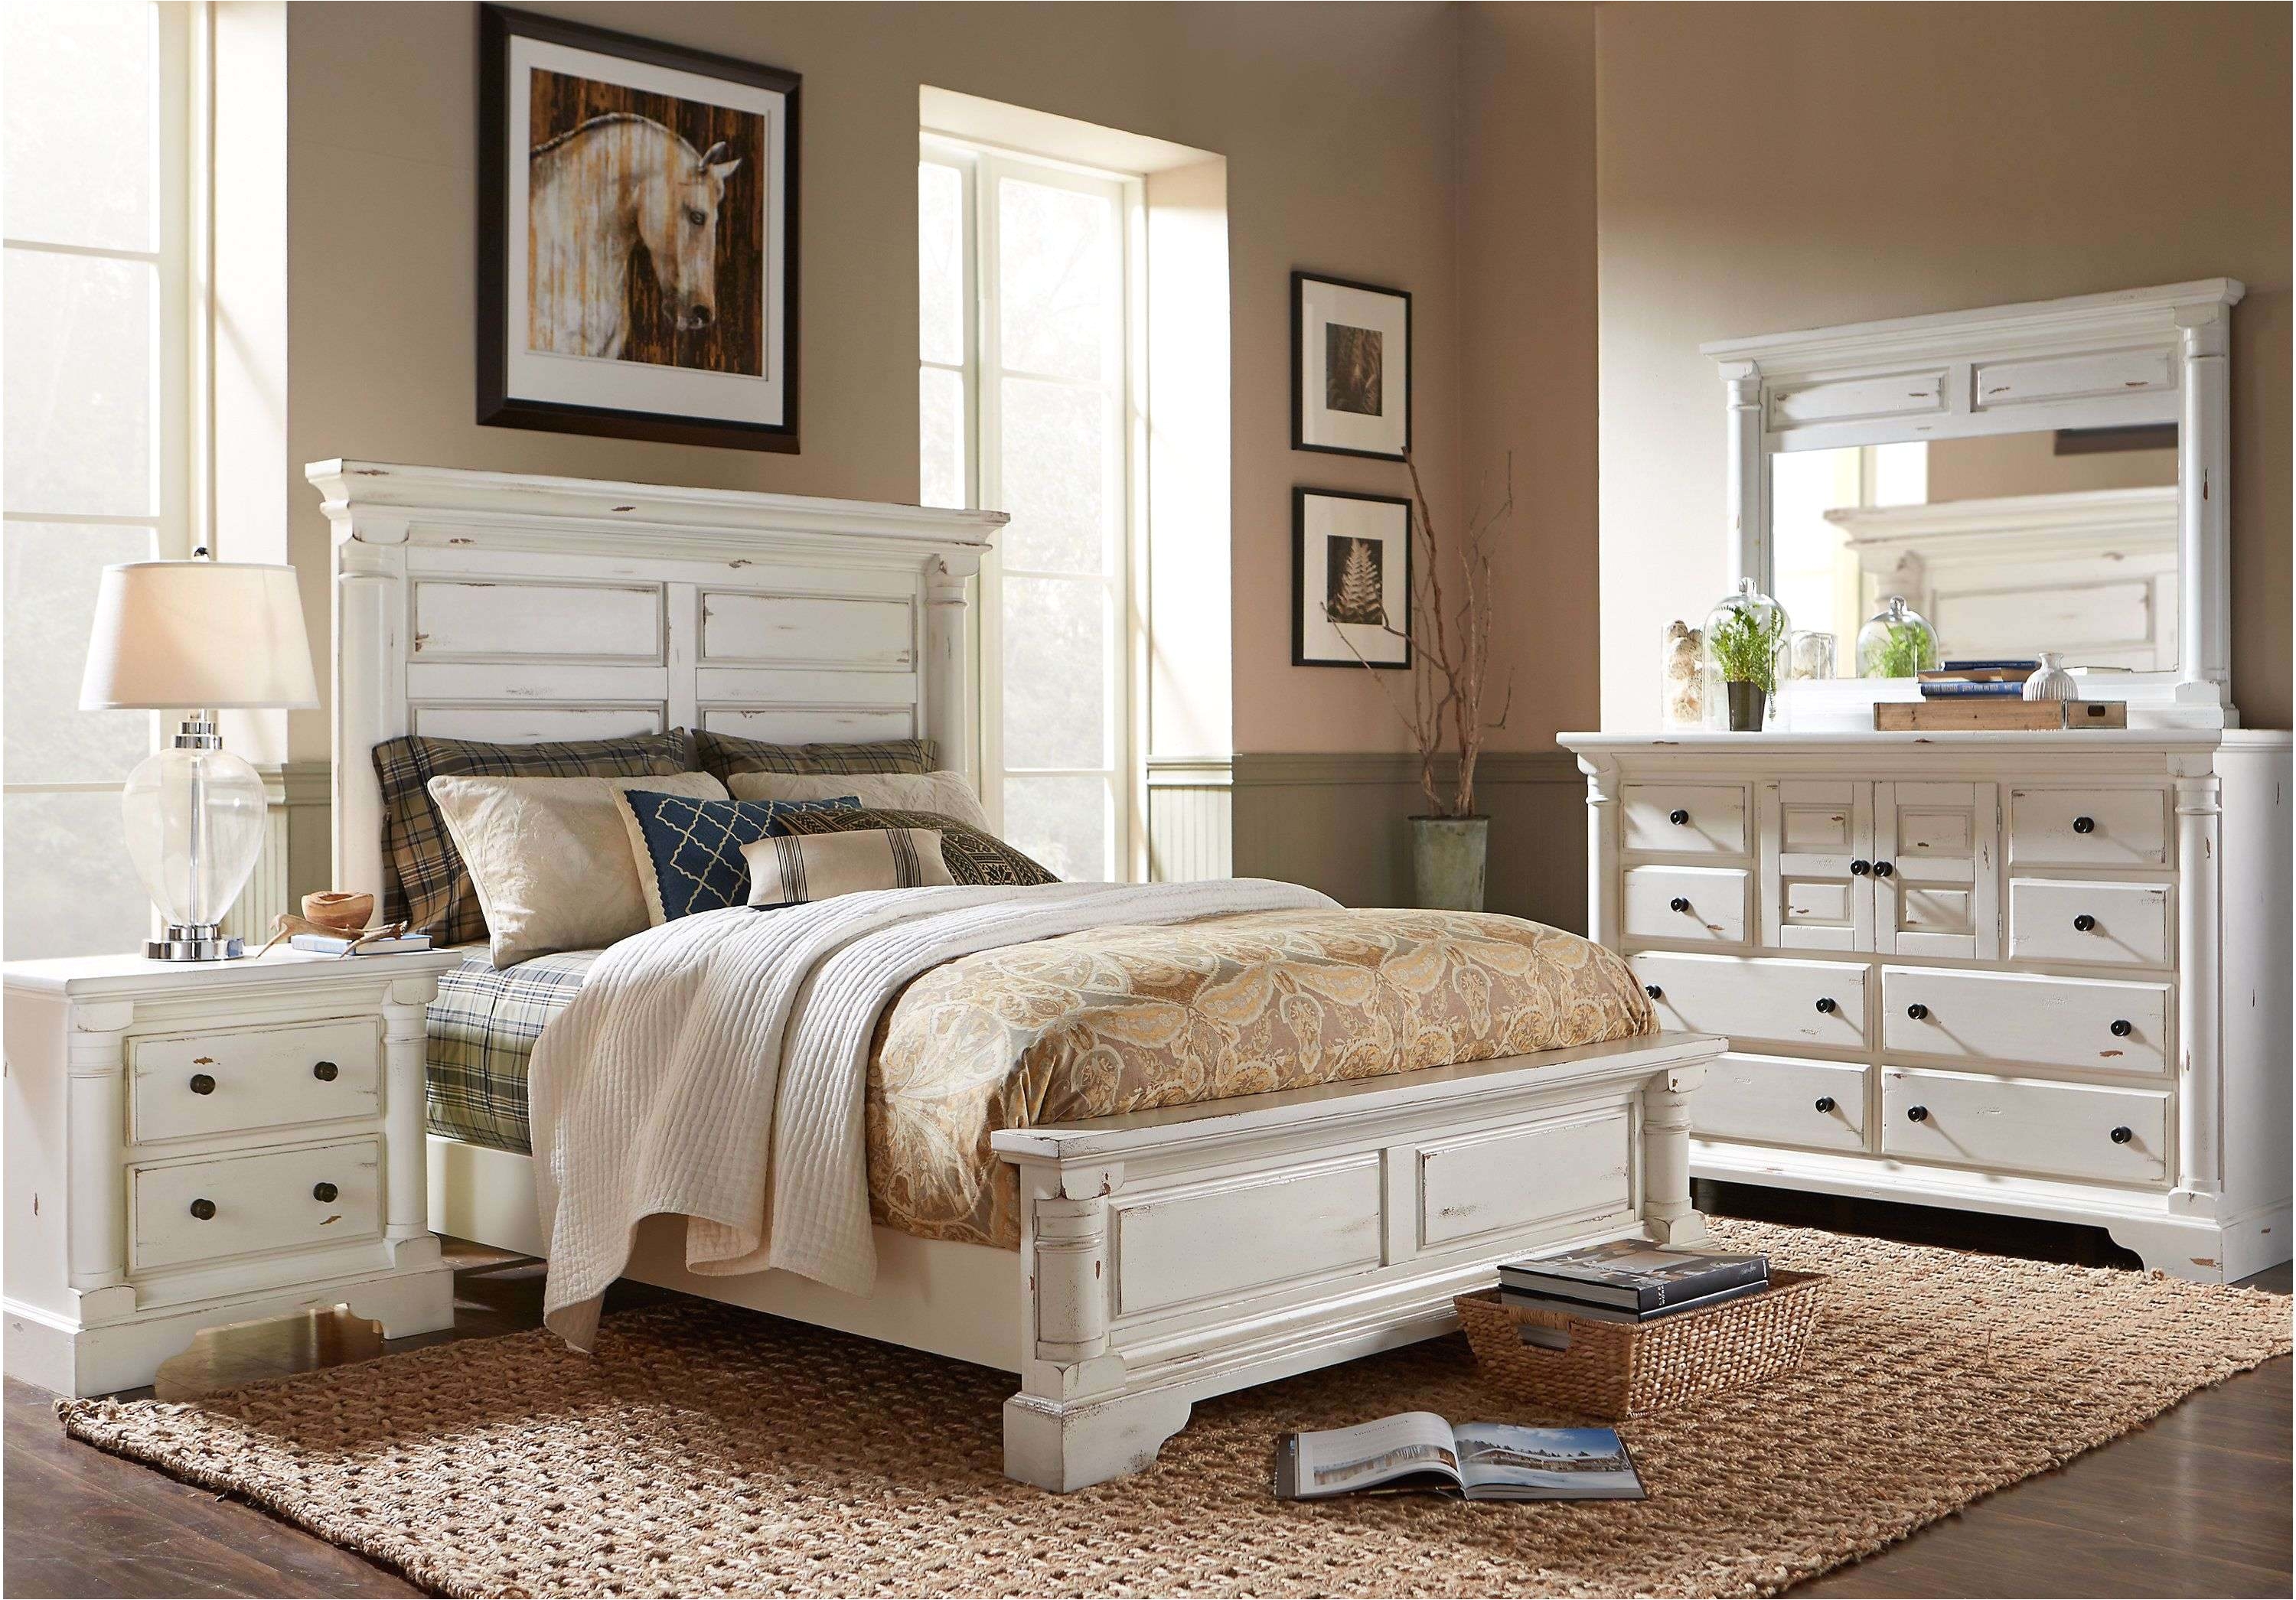 29 teens bedroom furniture attractive 30 luxury rooms to go girl bedroom sets